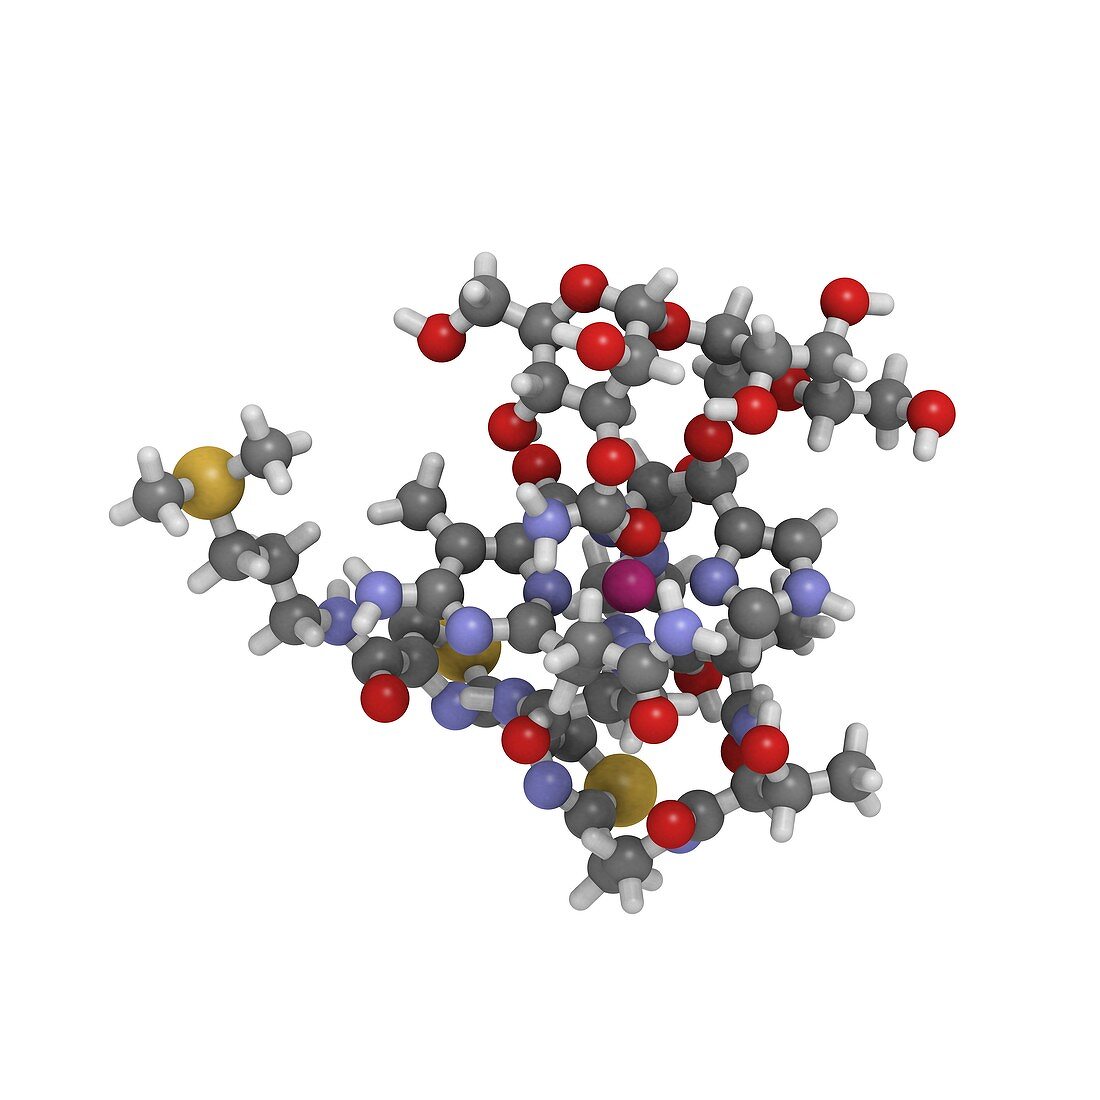 Bleomycin drug molecule